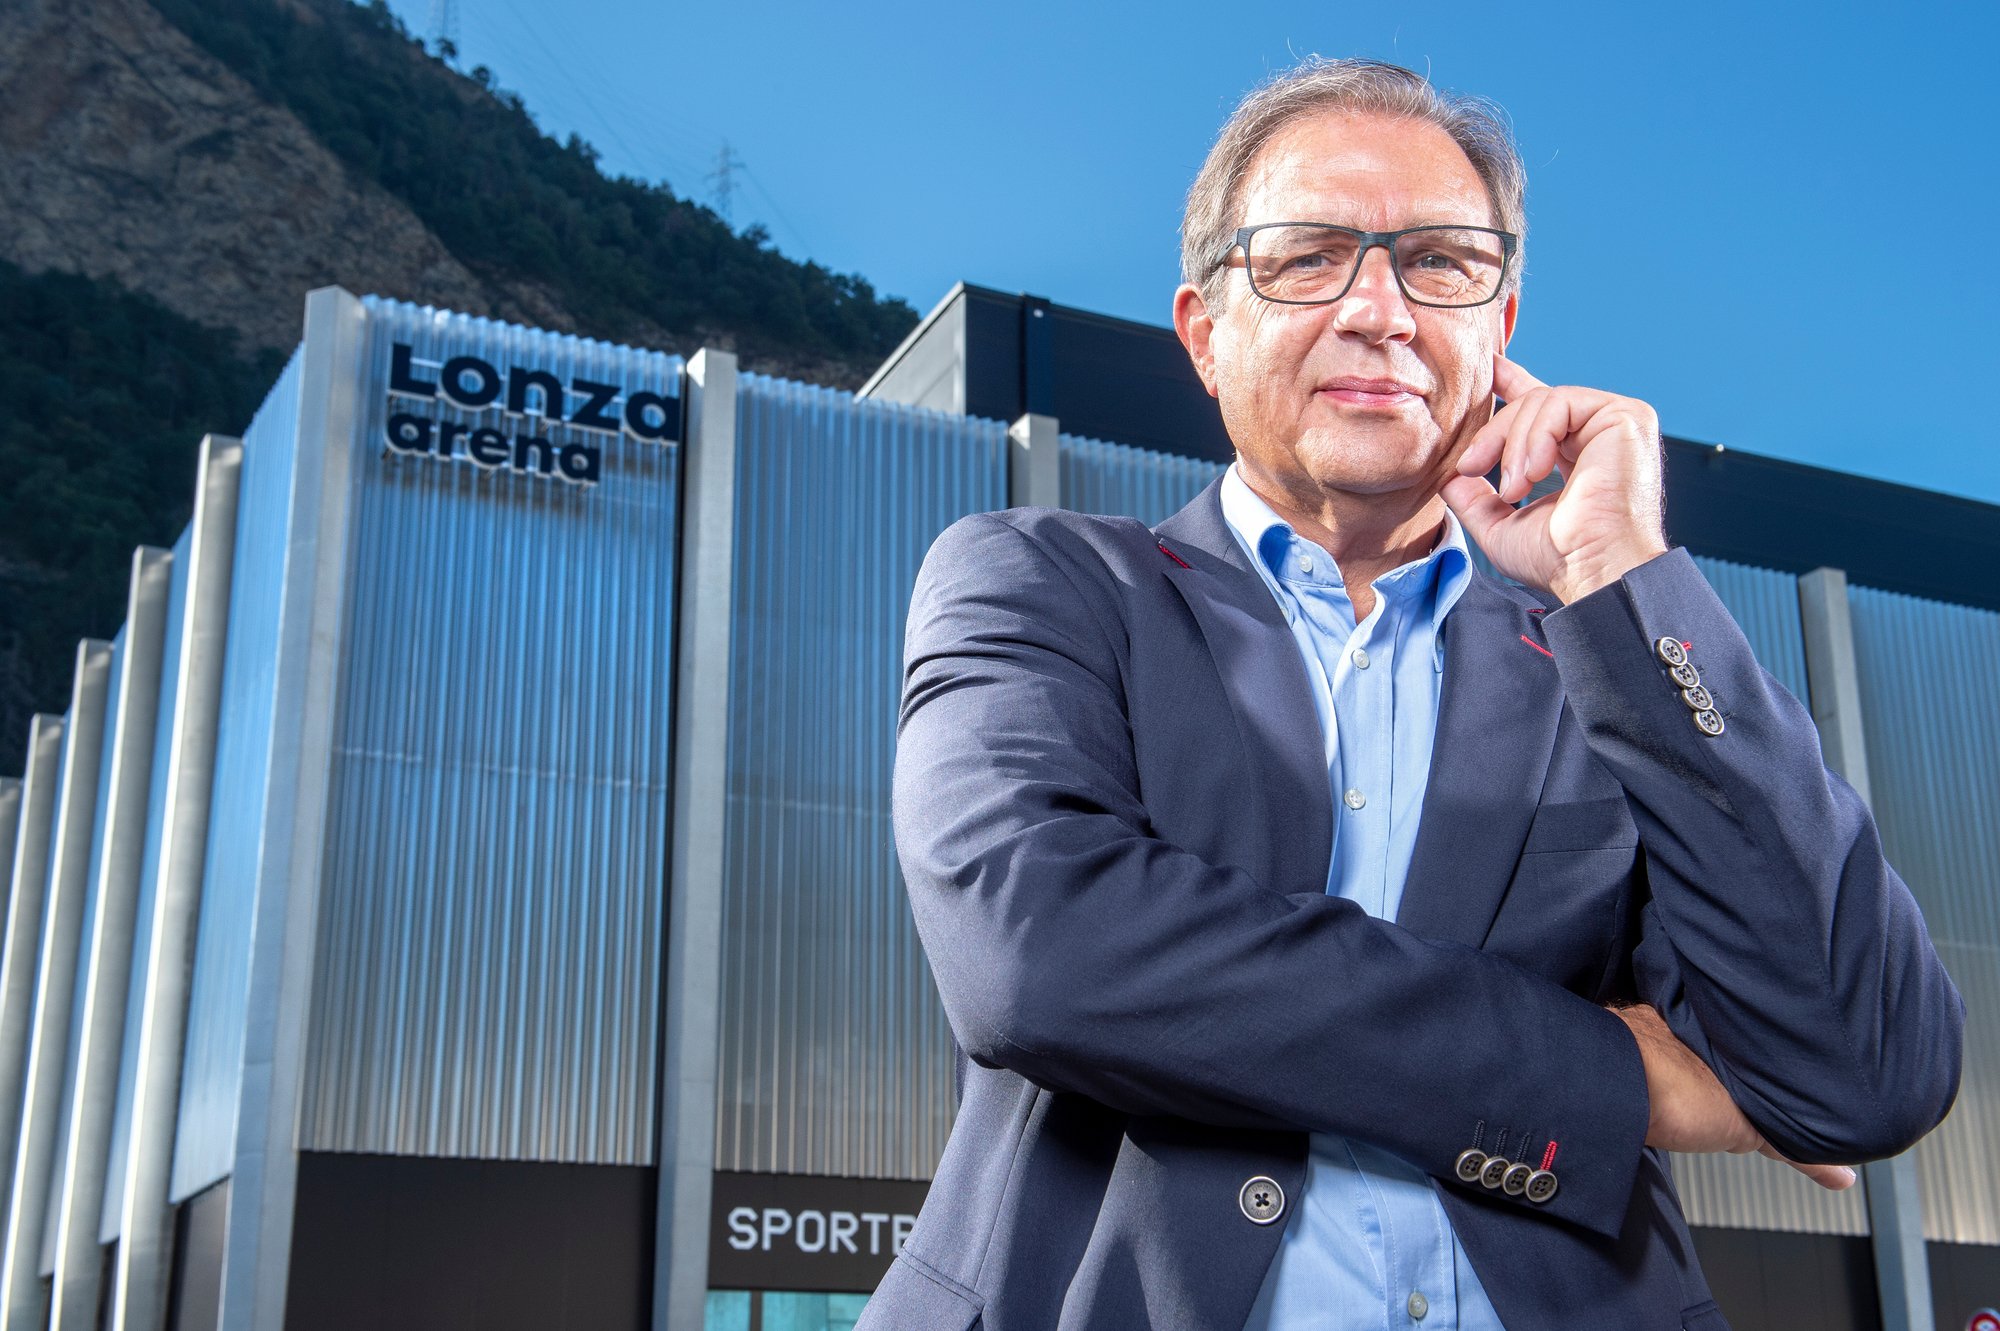 Viège - 12 septembre 2019 - Lonza Arena - Norbert Eyer, président du conseil d'administration du HC Viège.